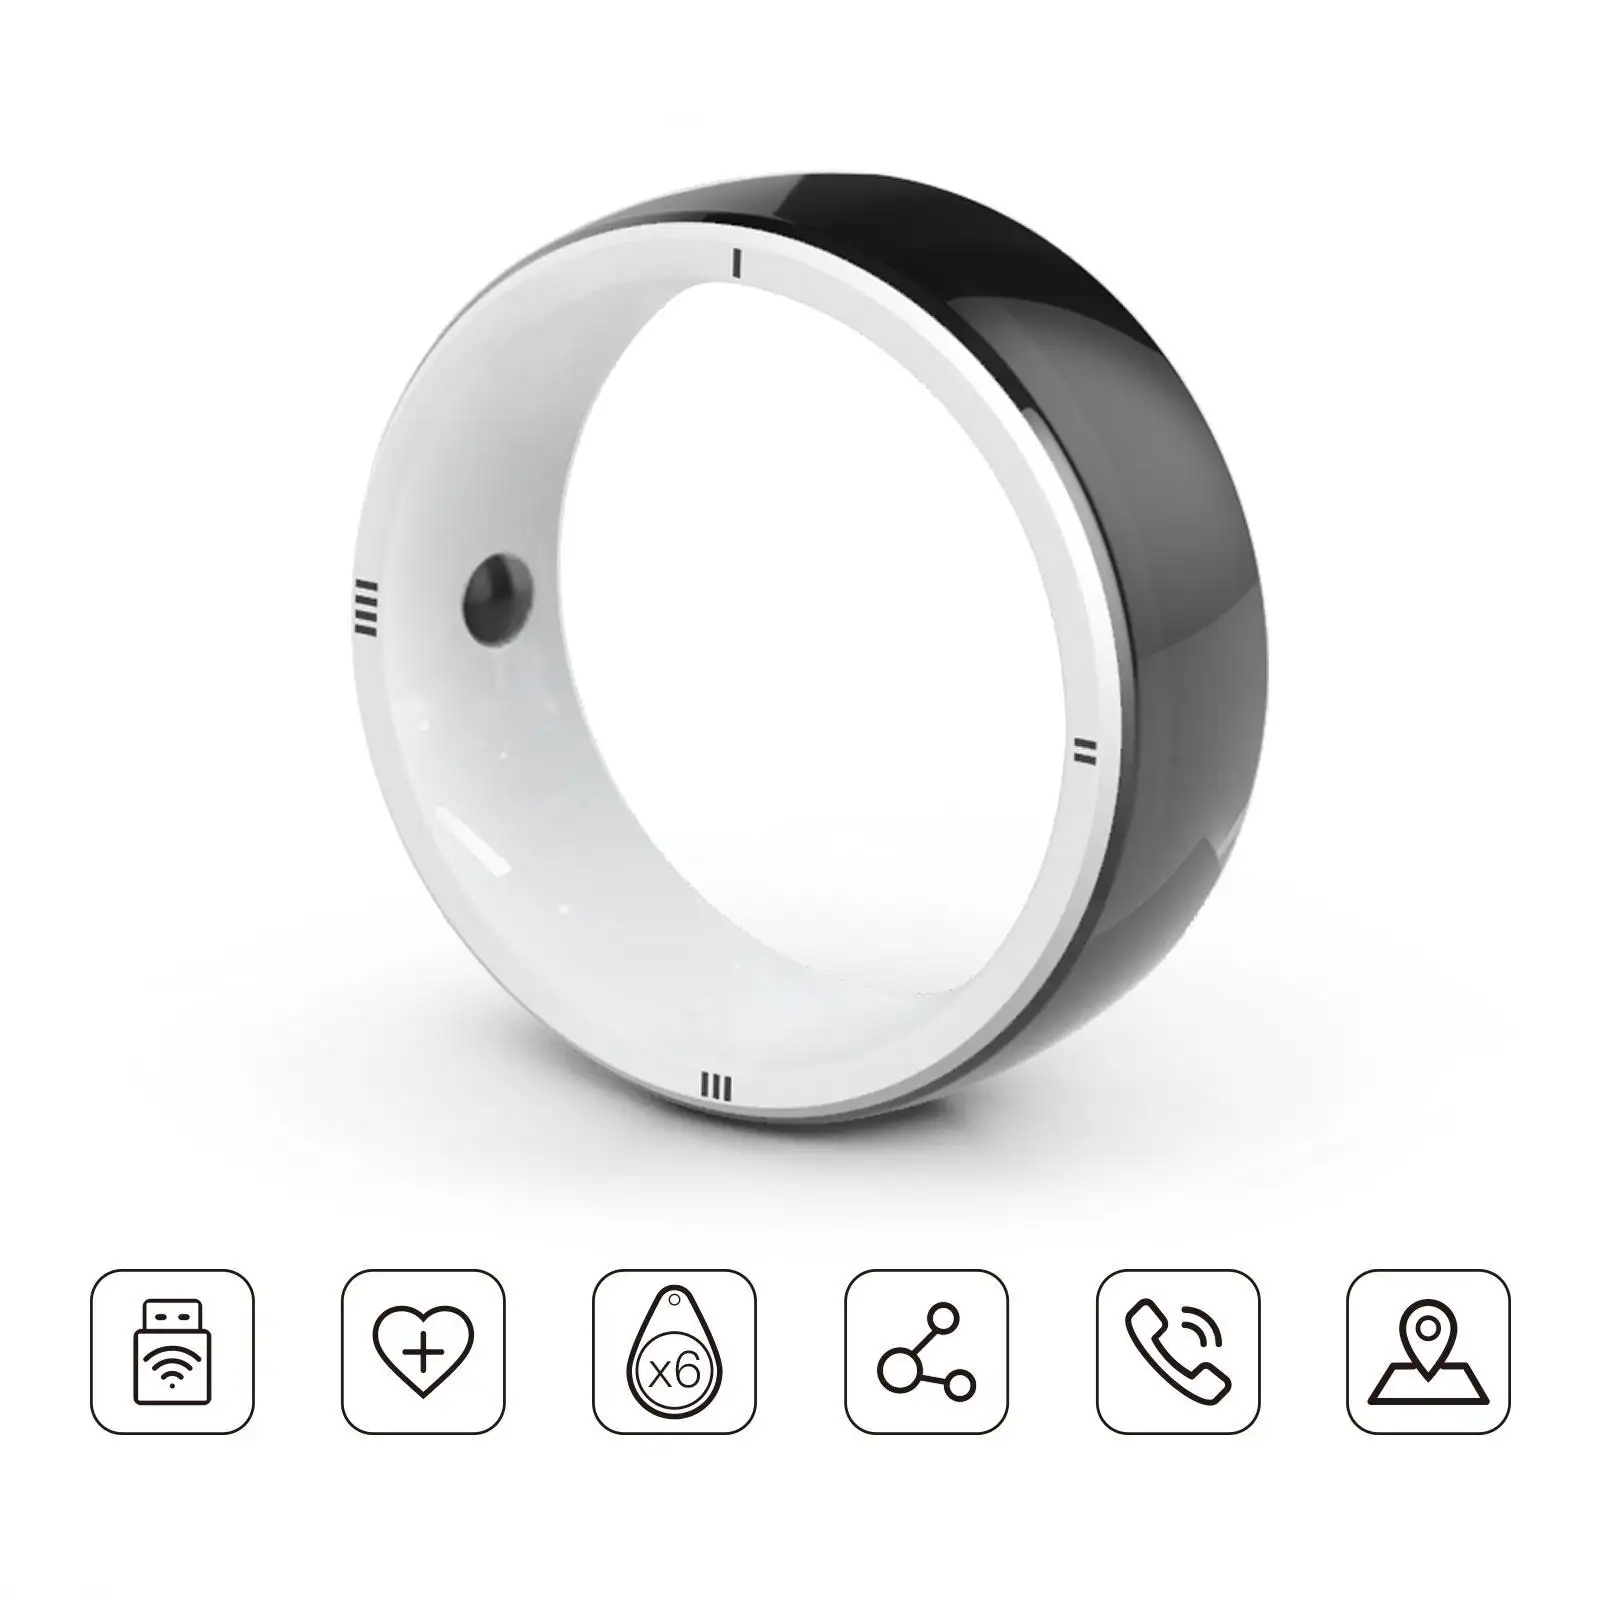 JAKCOM R5 produk cincin pintar baru cincin pintar sebagai casing pikachu tripod dan tongkat selfie gerald everett mtukuzi dream revit